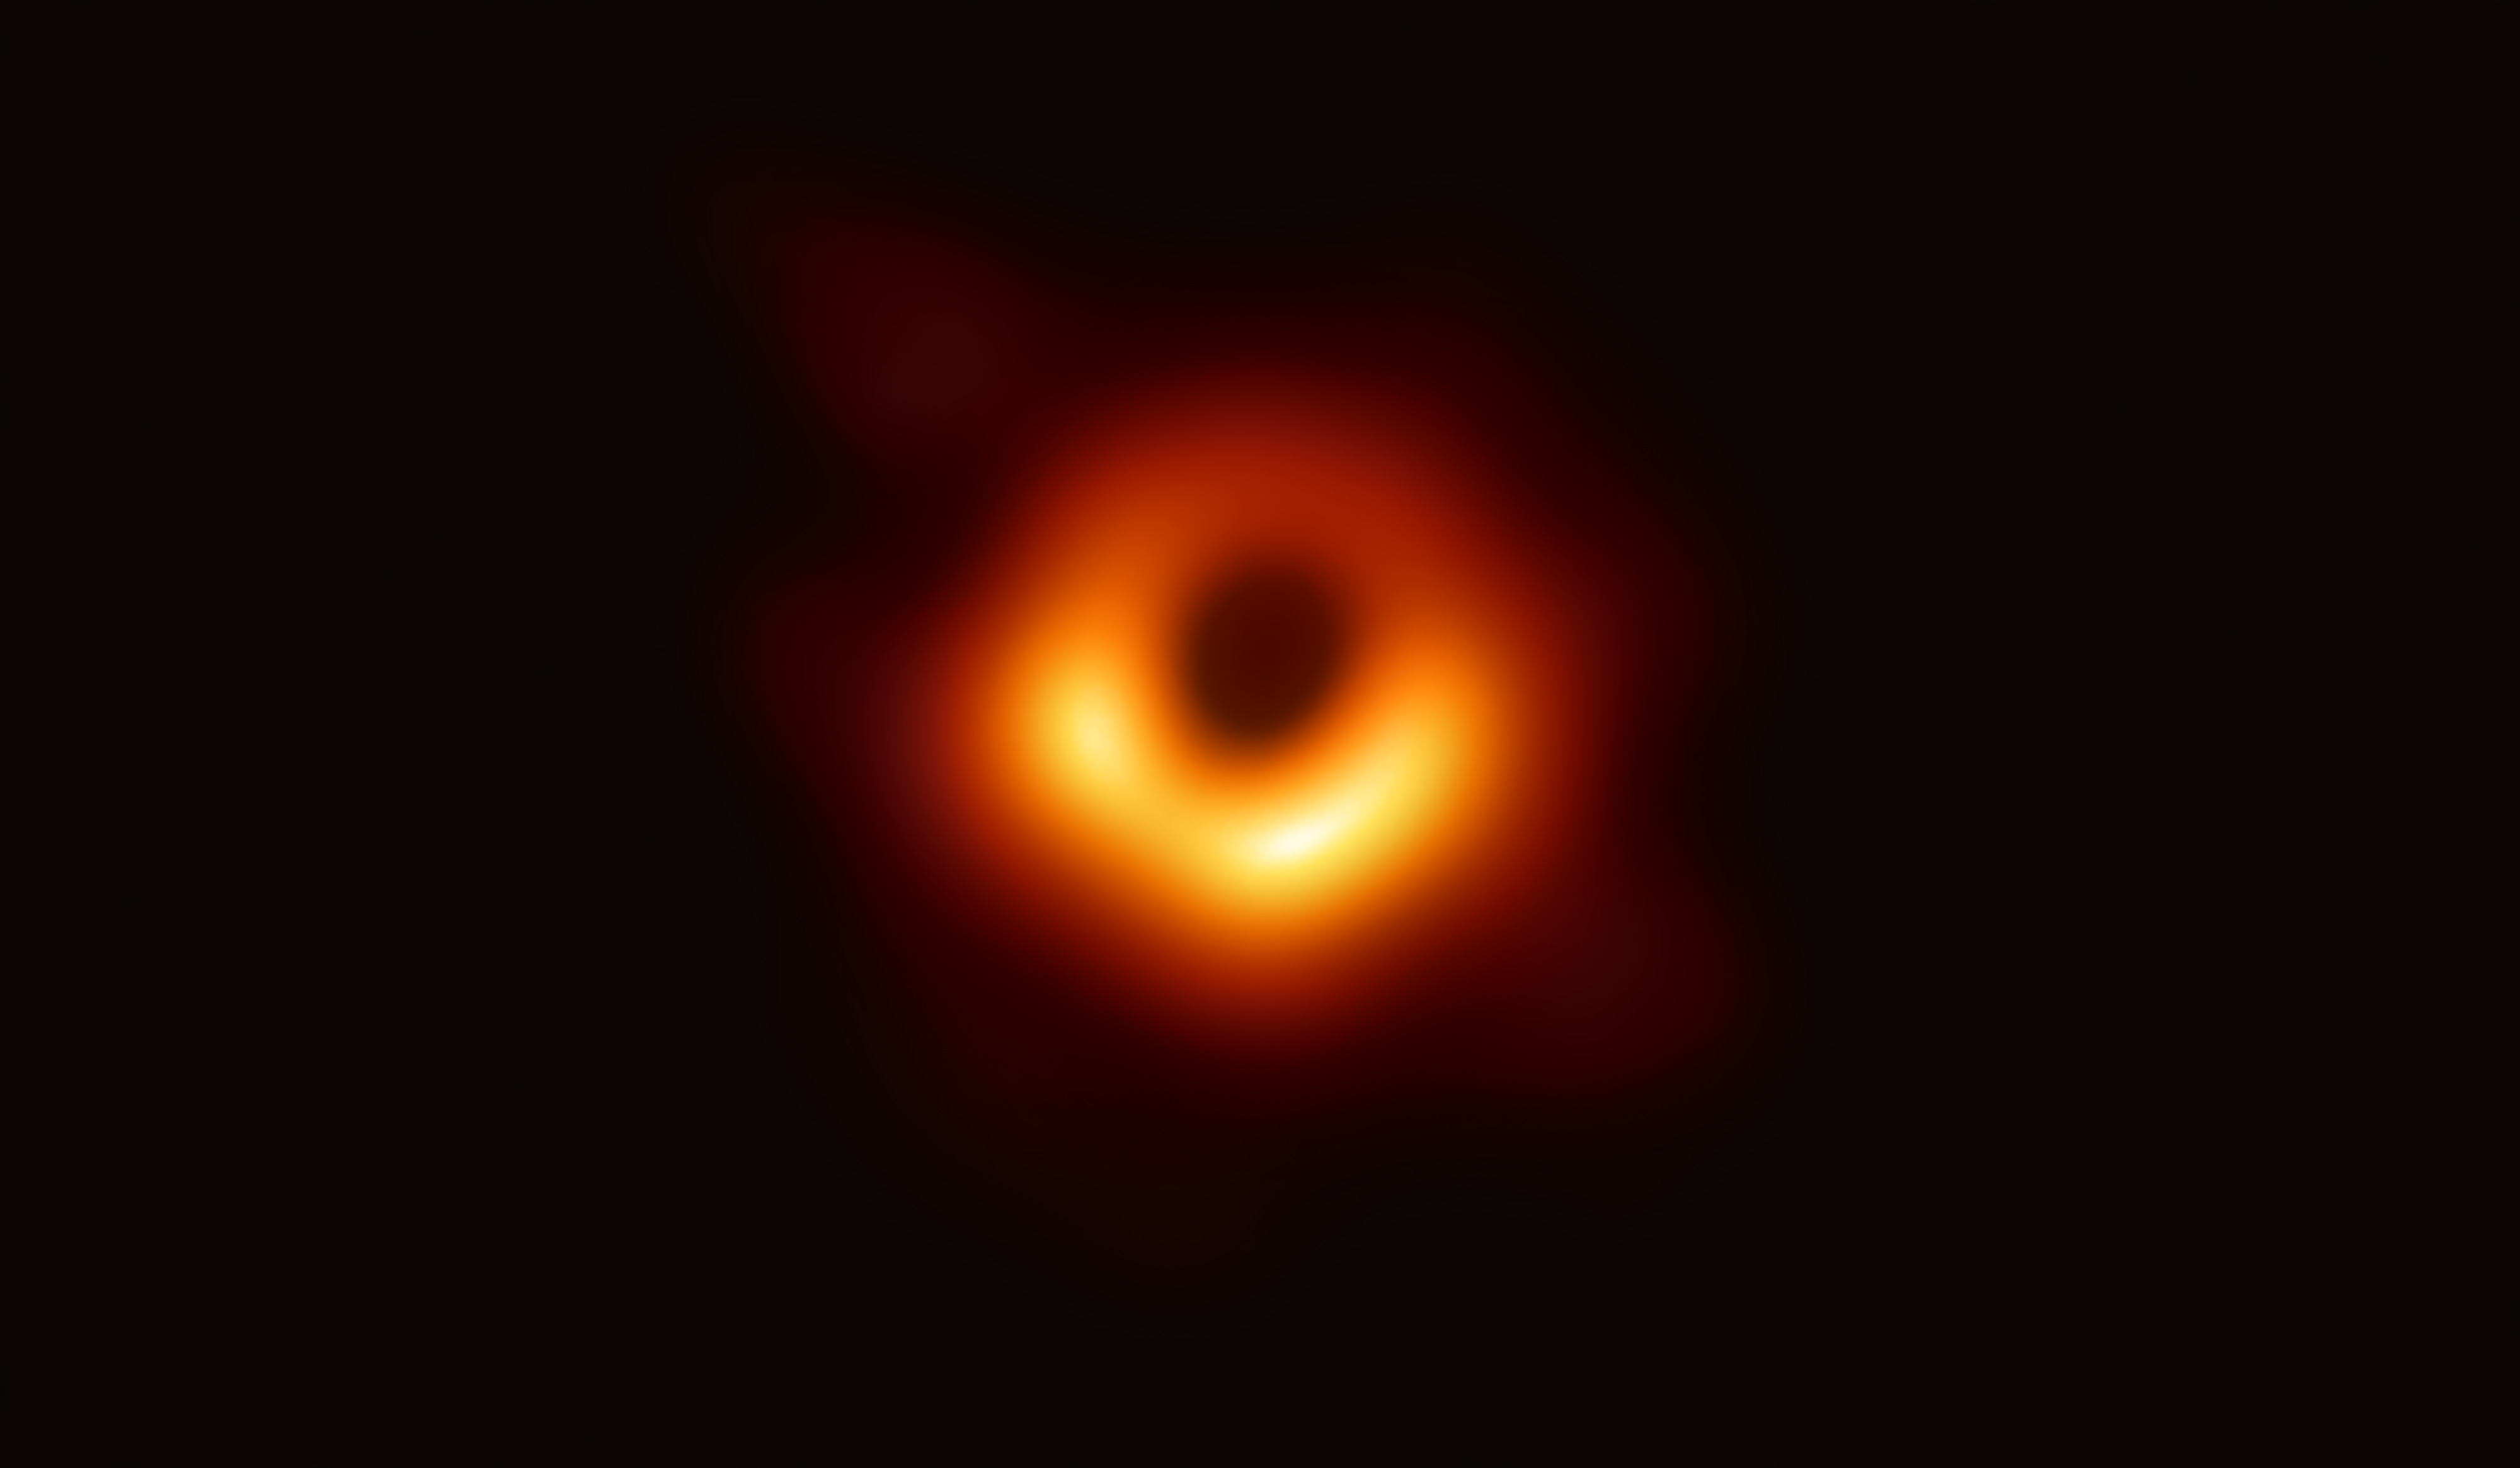 Ineenstortende halo's van donkere materie zouden de 'zaden' kunnen zijn voor superzware zwarte gaten